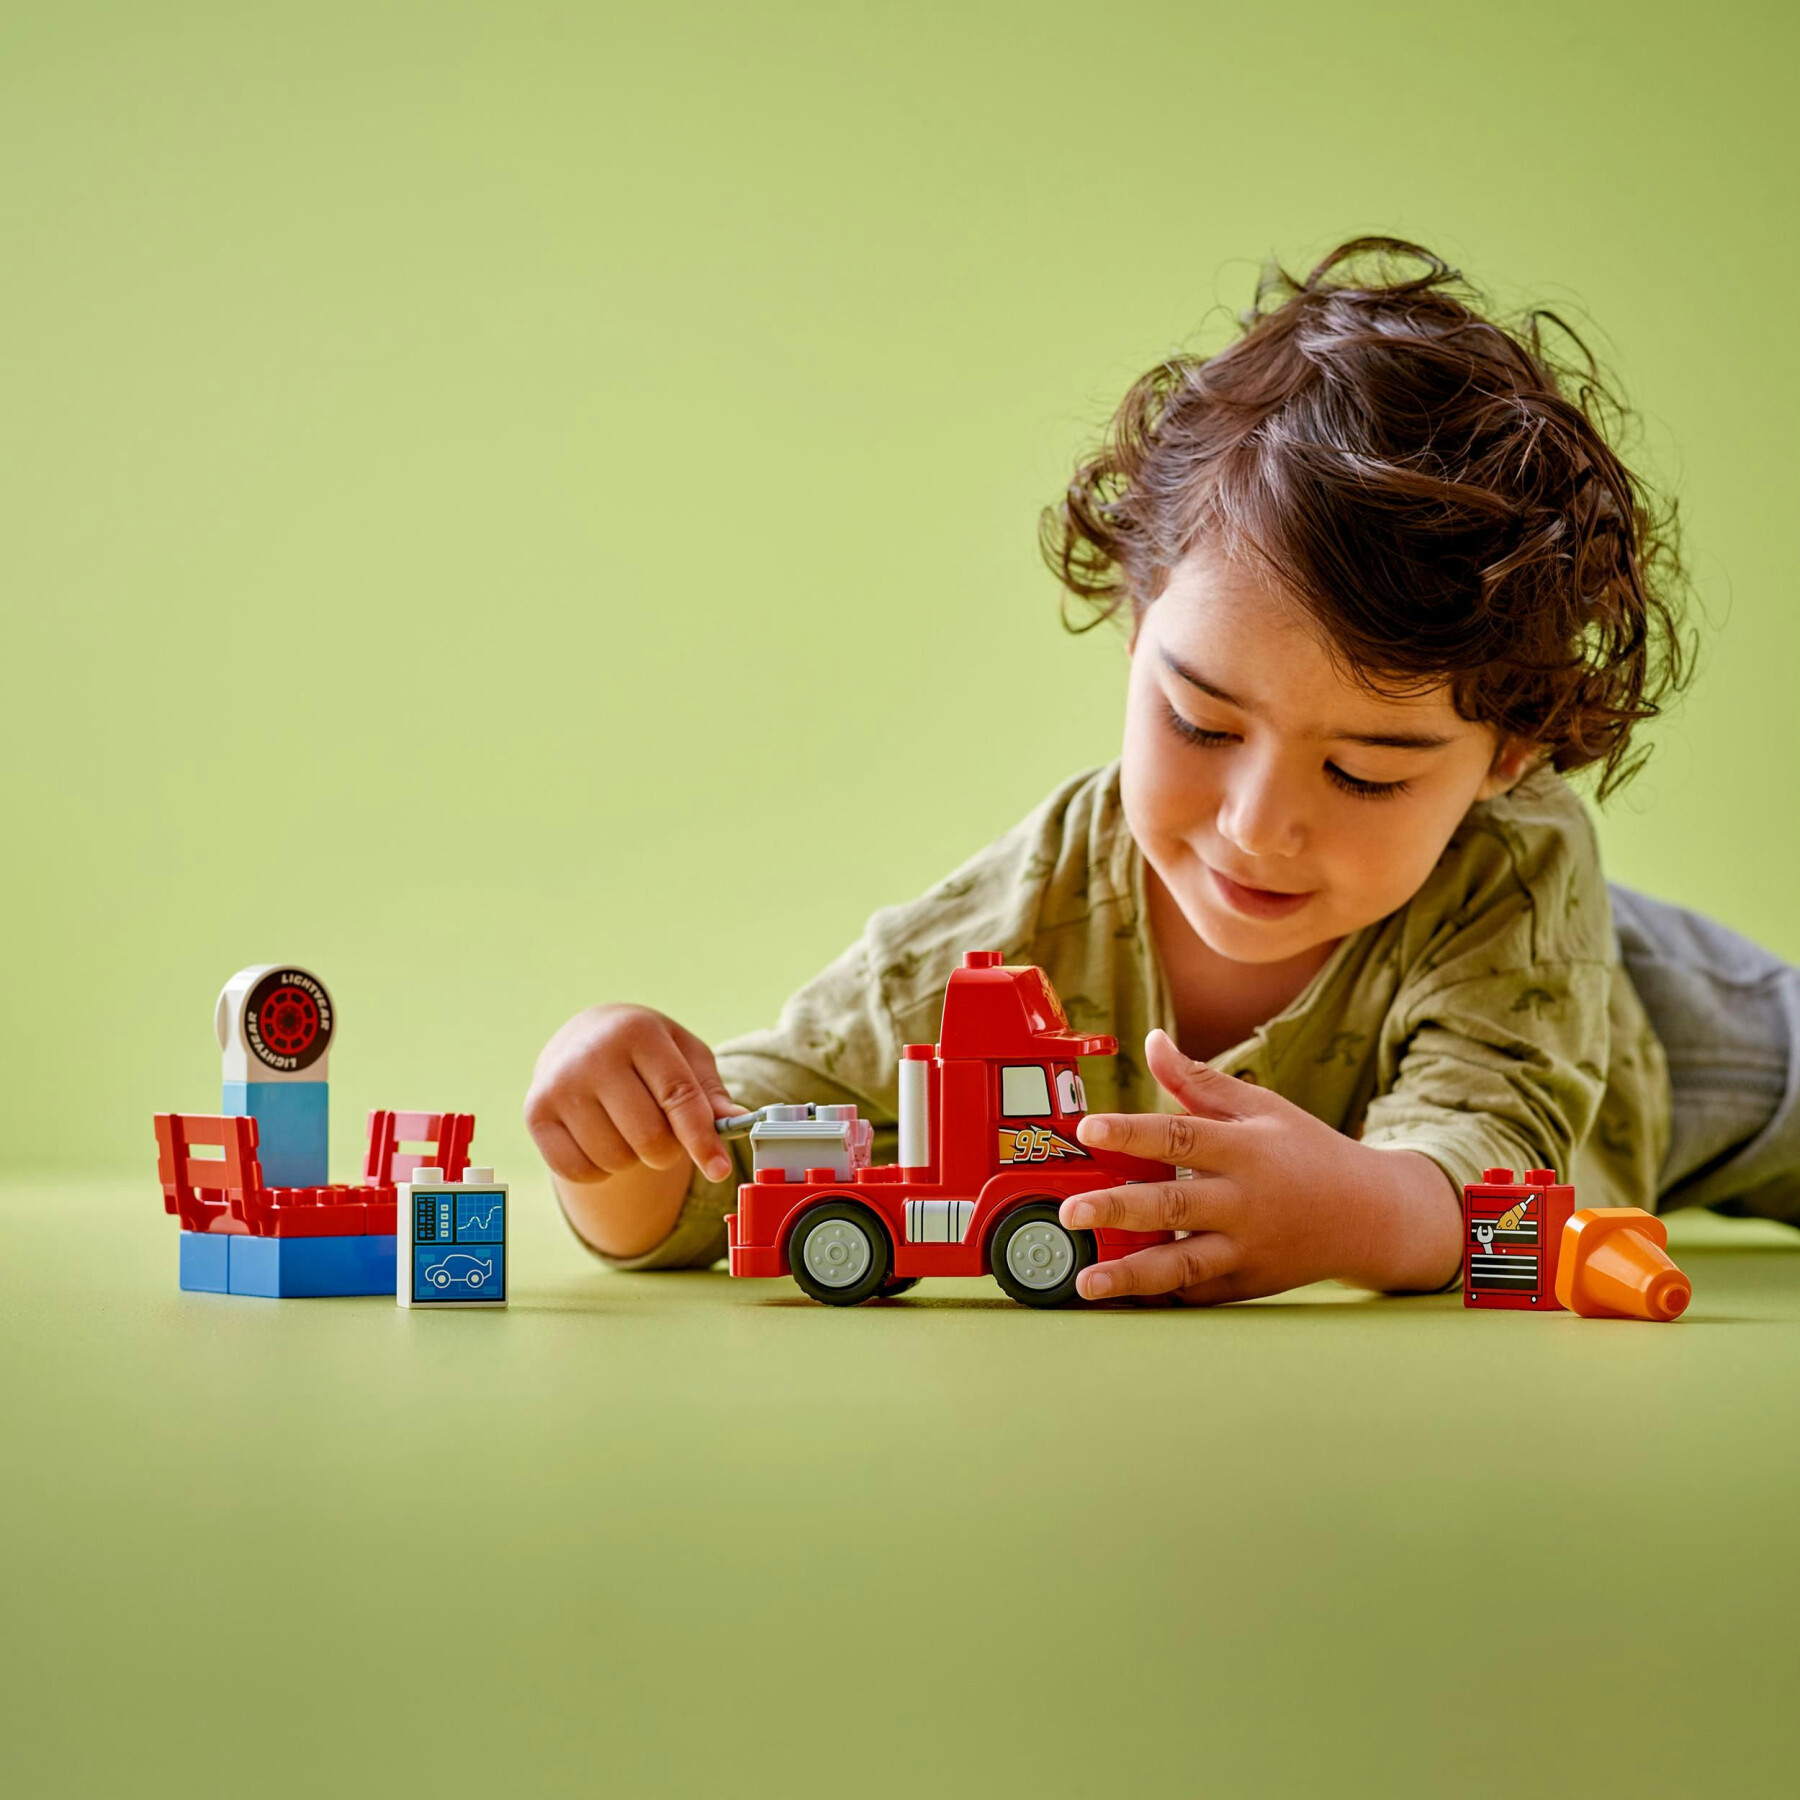 Lego lego duplo disney e pixar 10417 mack al circuito, giochi per bambini di 2+ anni con camion giocattolo rosso da costruire - LEGO DUPLO